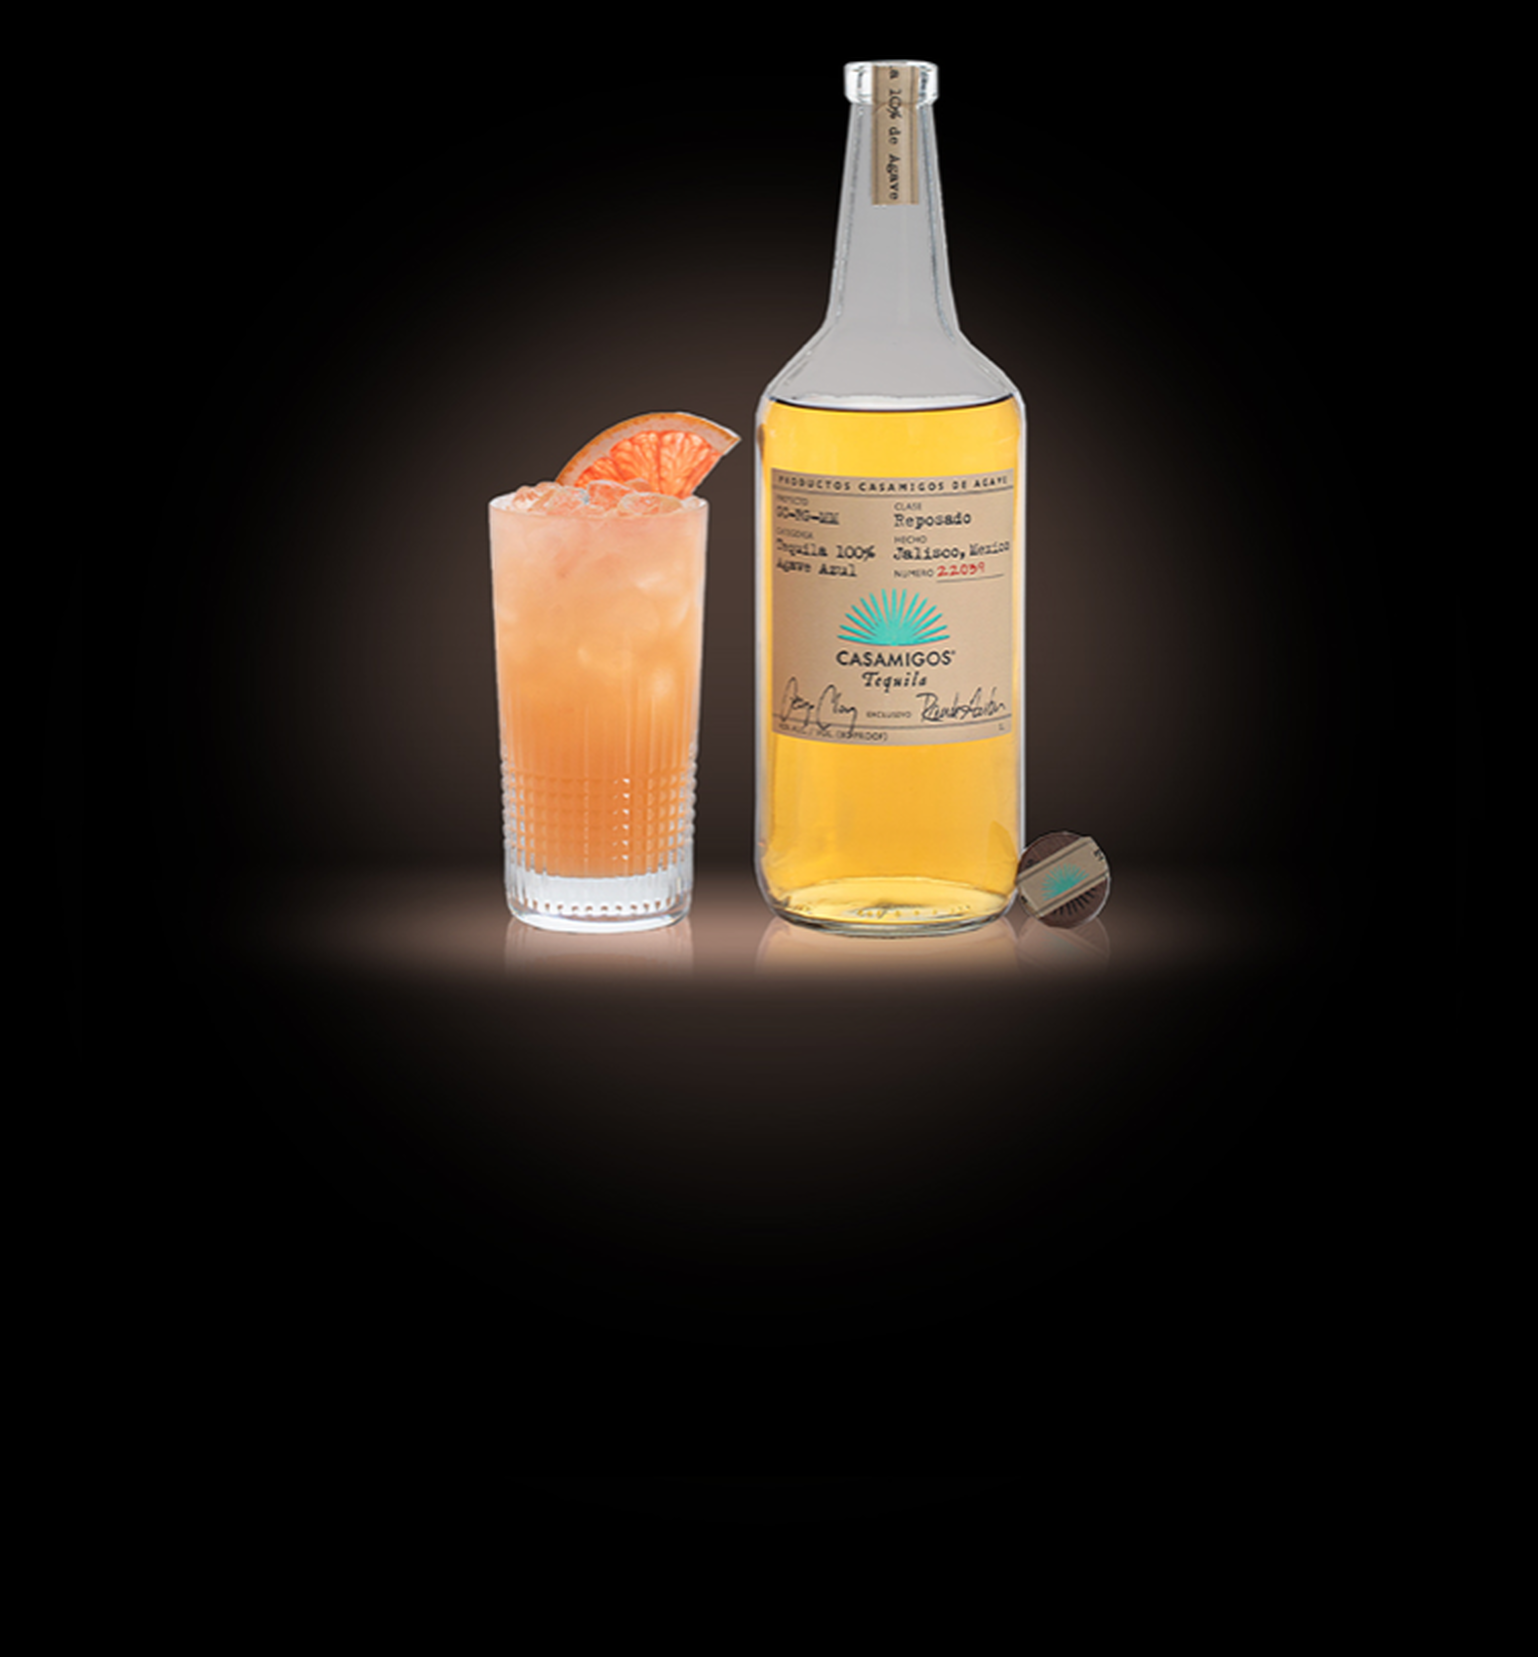 The Casamigos Paloma Cocktail